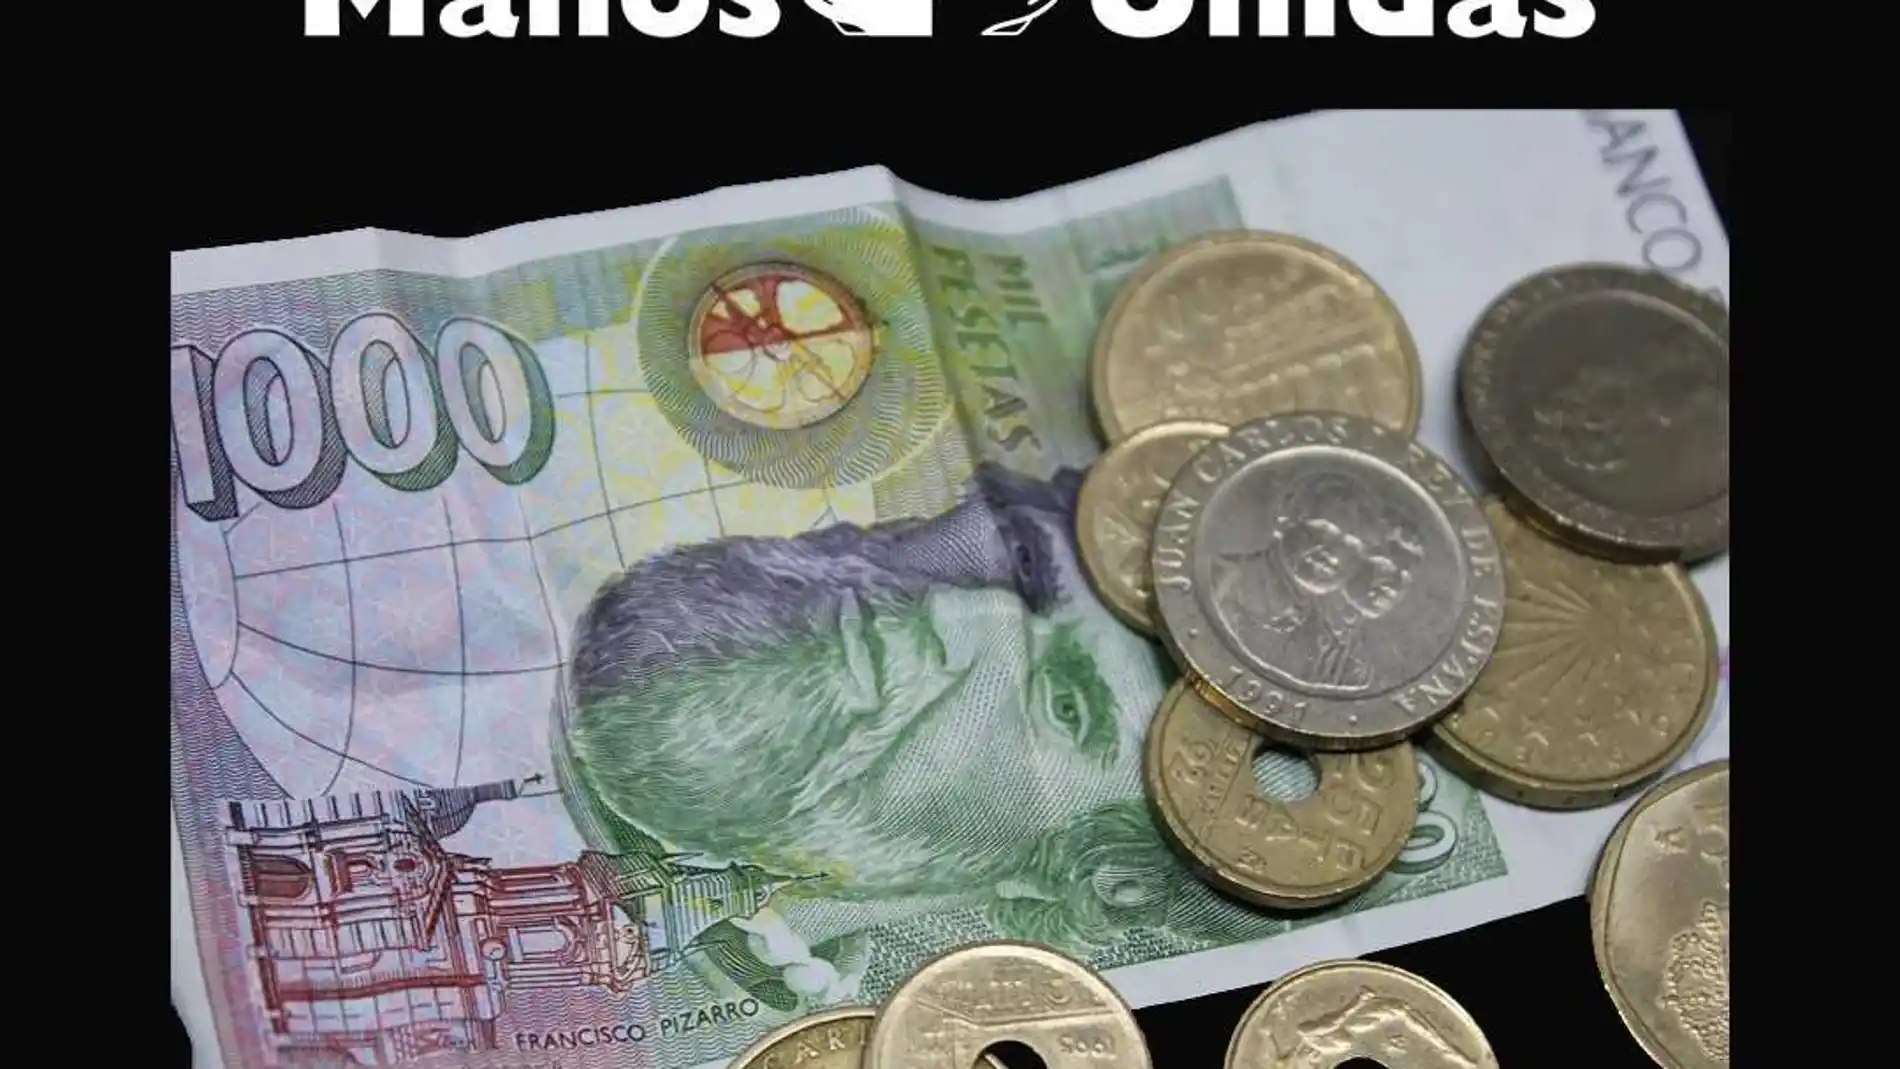 Las pesetas estuvieron en circulación hasta el año 2002, con la entrada del euro, tras 133 años de vigencia